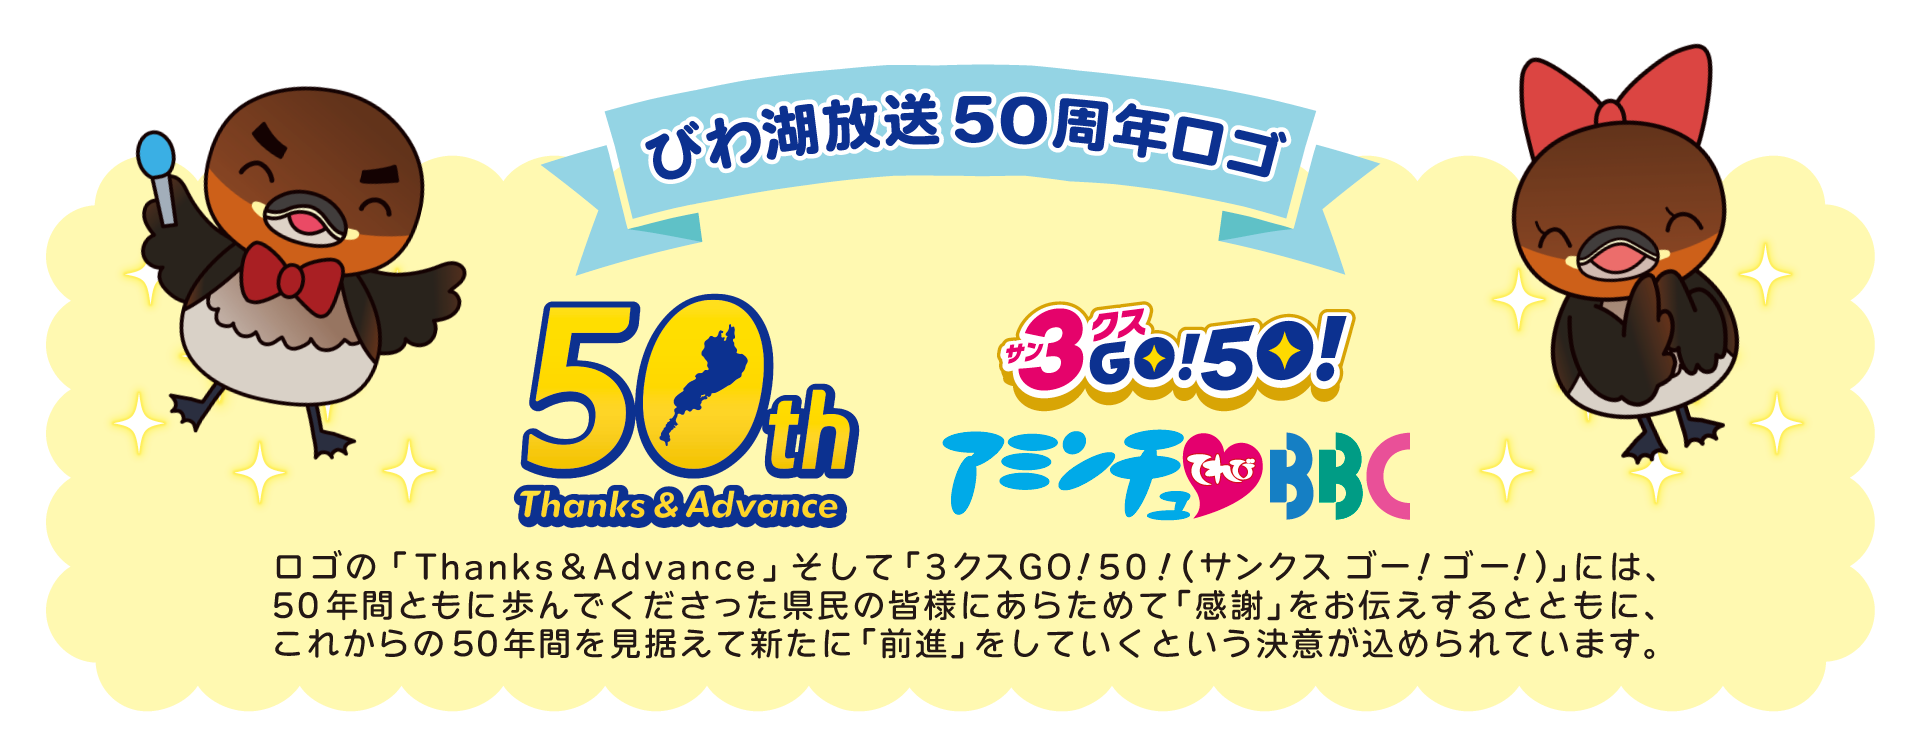 びわ湖放送50周年ロゴ